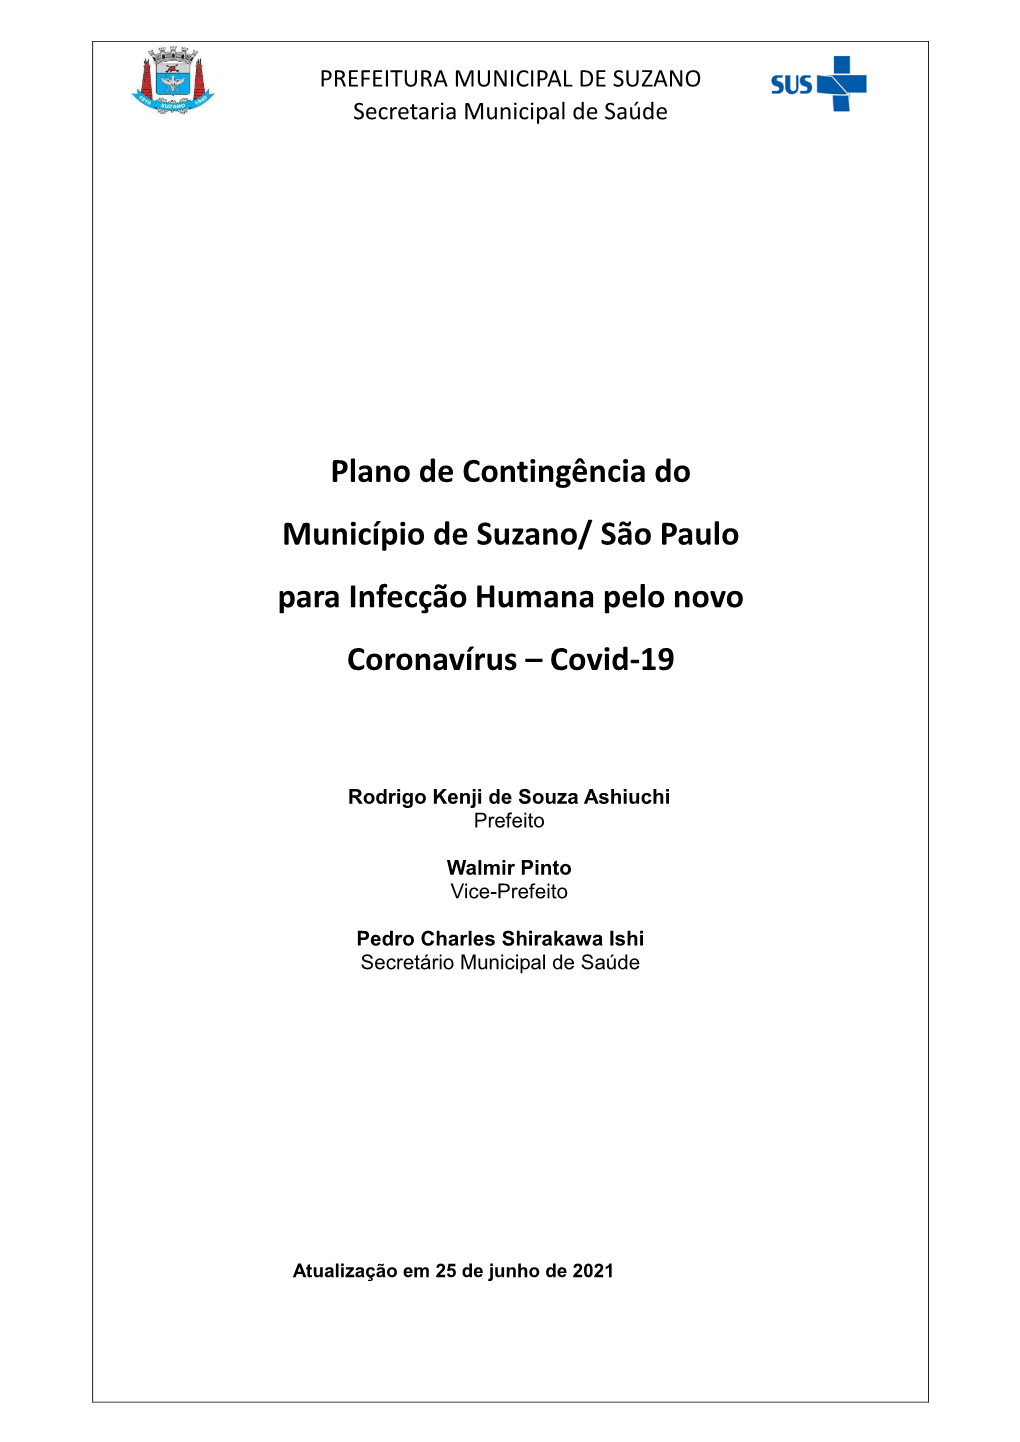 São Paulo Para Infecção Humana Pelo Novo Coronavírus – Covid-19